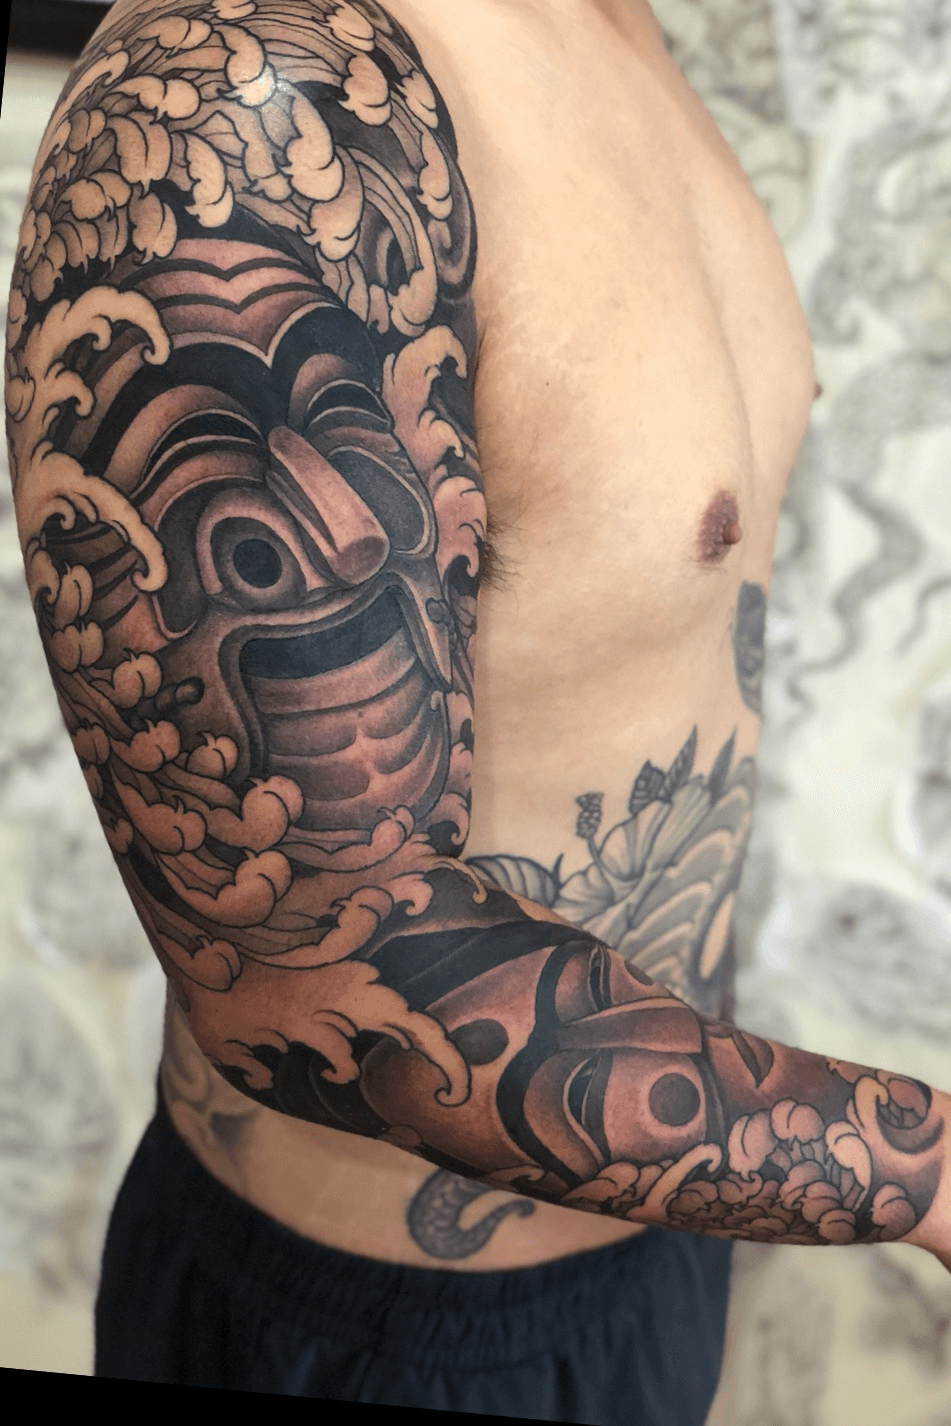 100 Best Full Sleeve Tattoos For Men  Tattoo Designs  TattoosBagcom